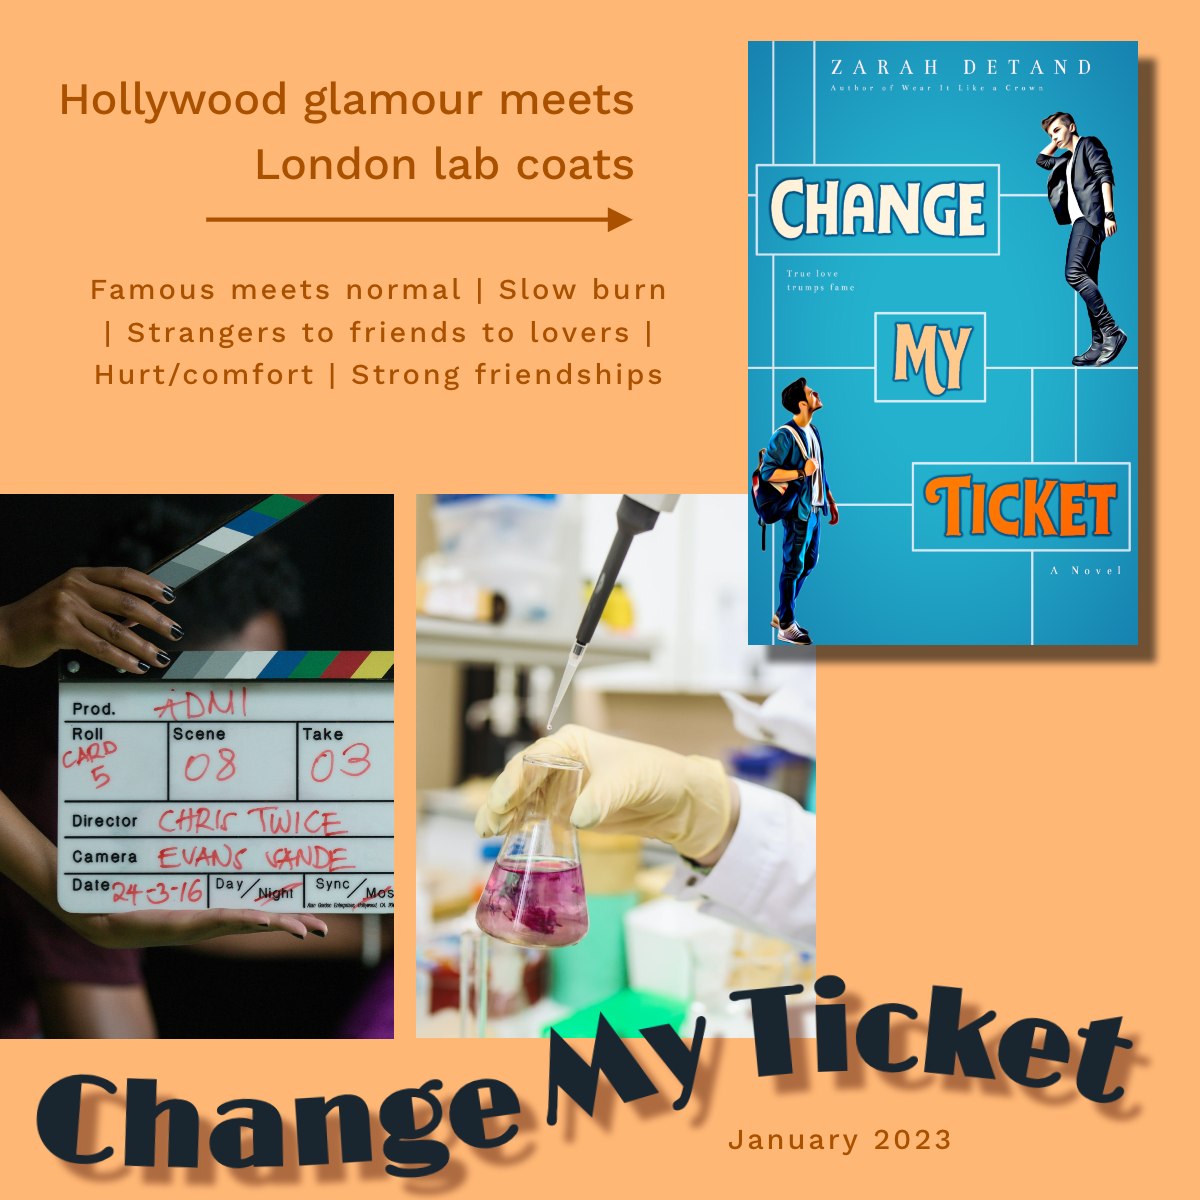 Change My Ticket